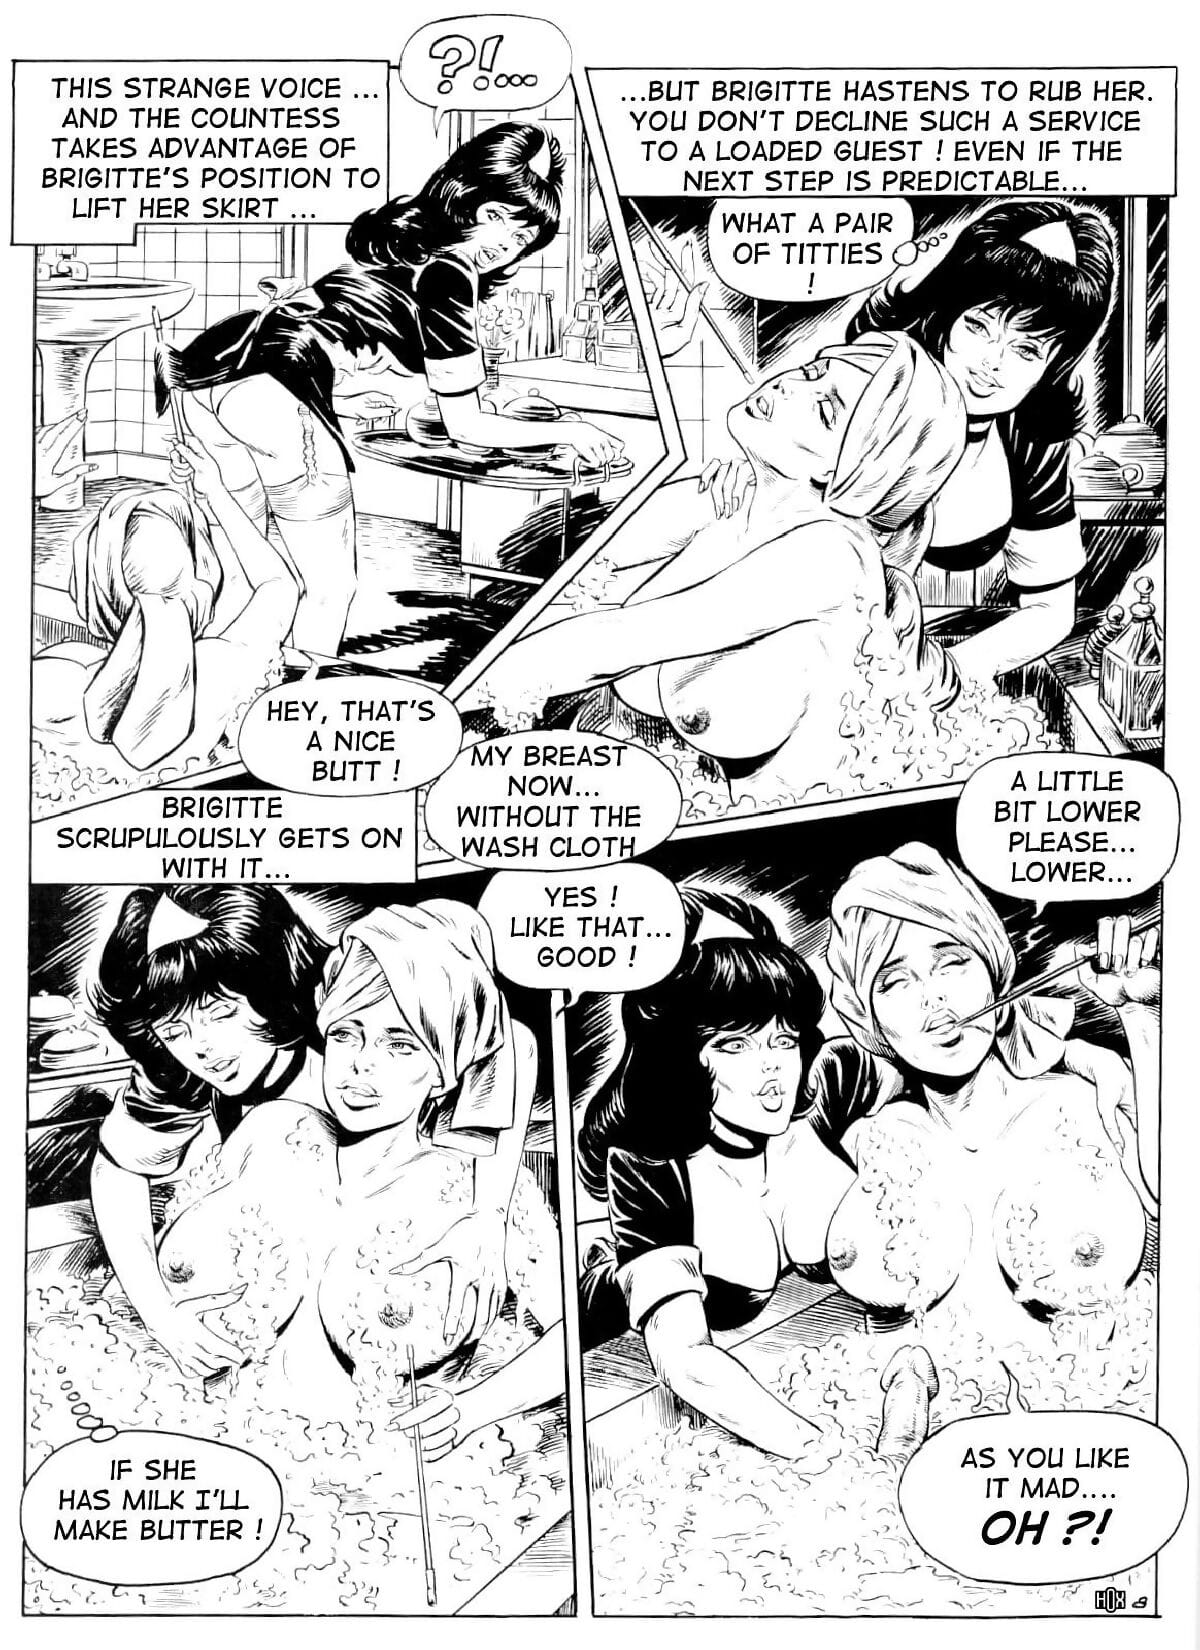 Brigitte De Luxe Maid #2 page 1